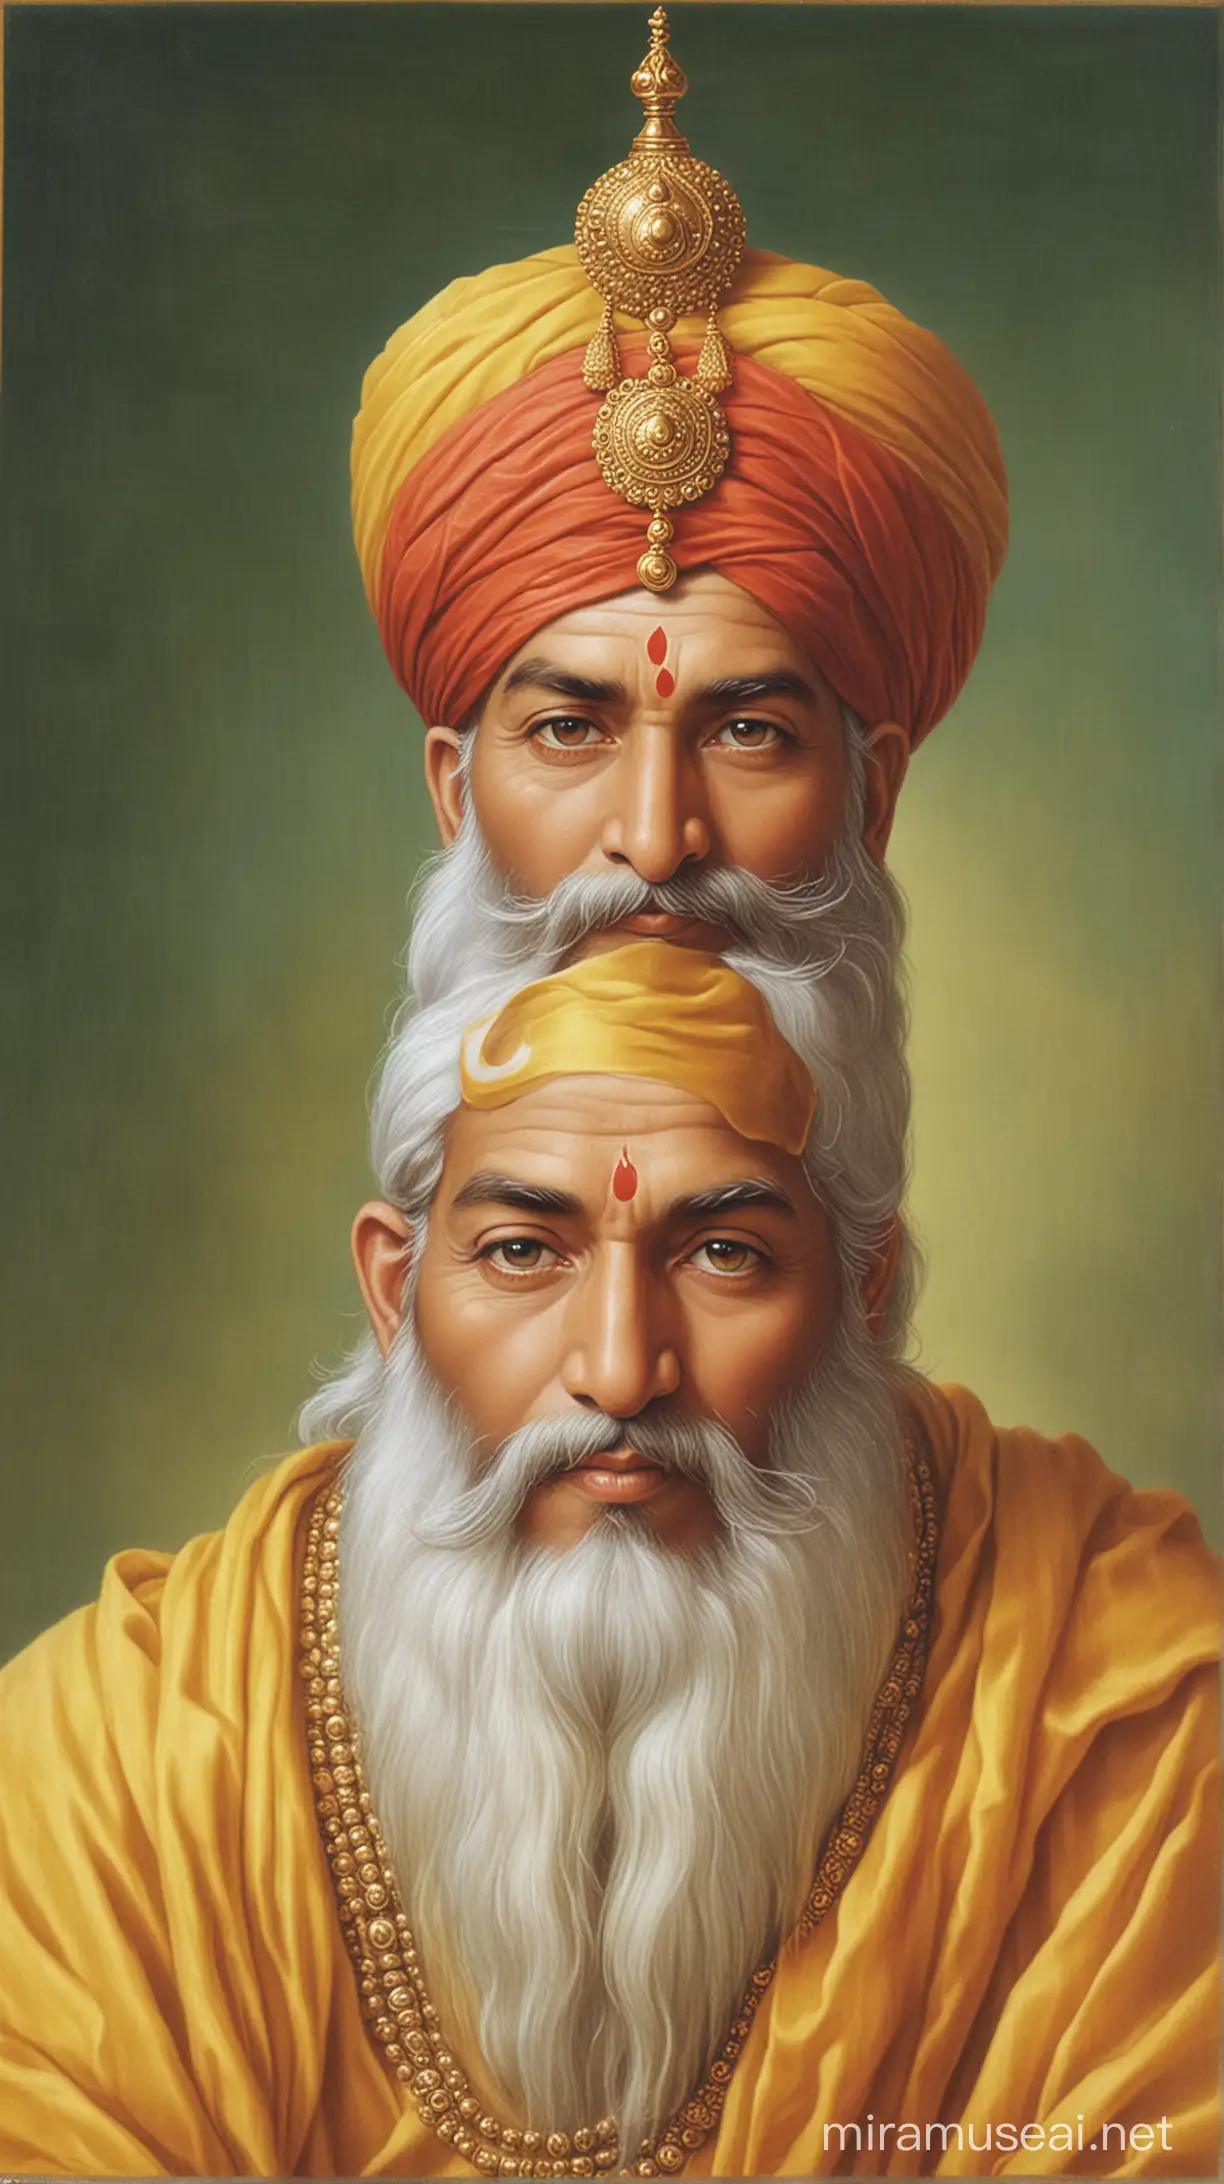 Guru Teg Bahadur Revered Sikh Guru in Divine Meditation